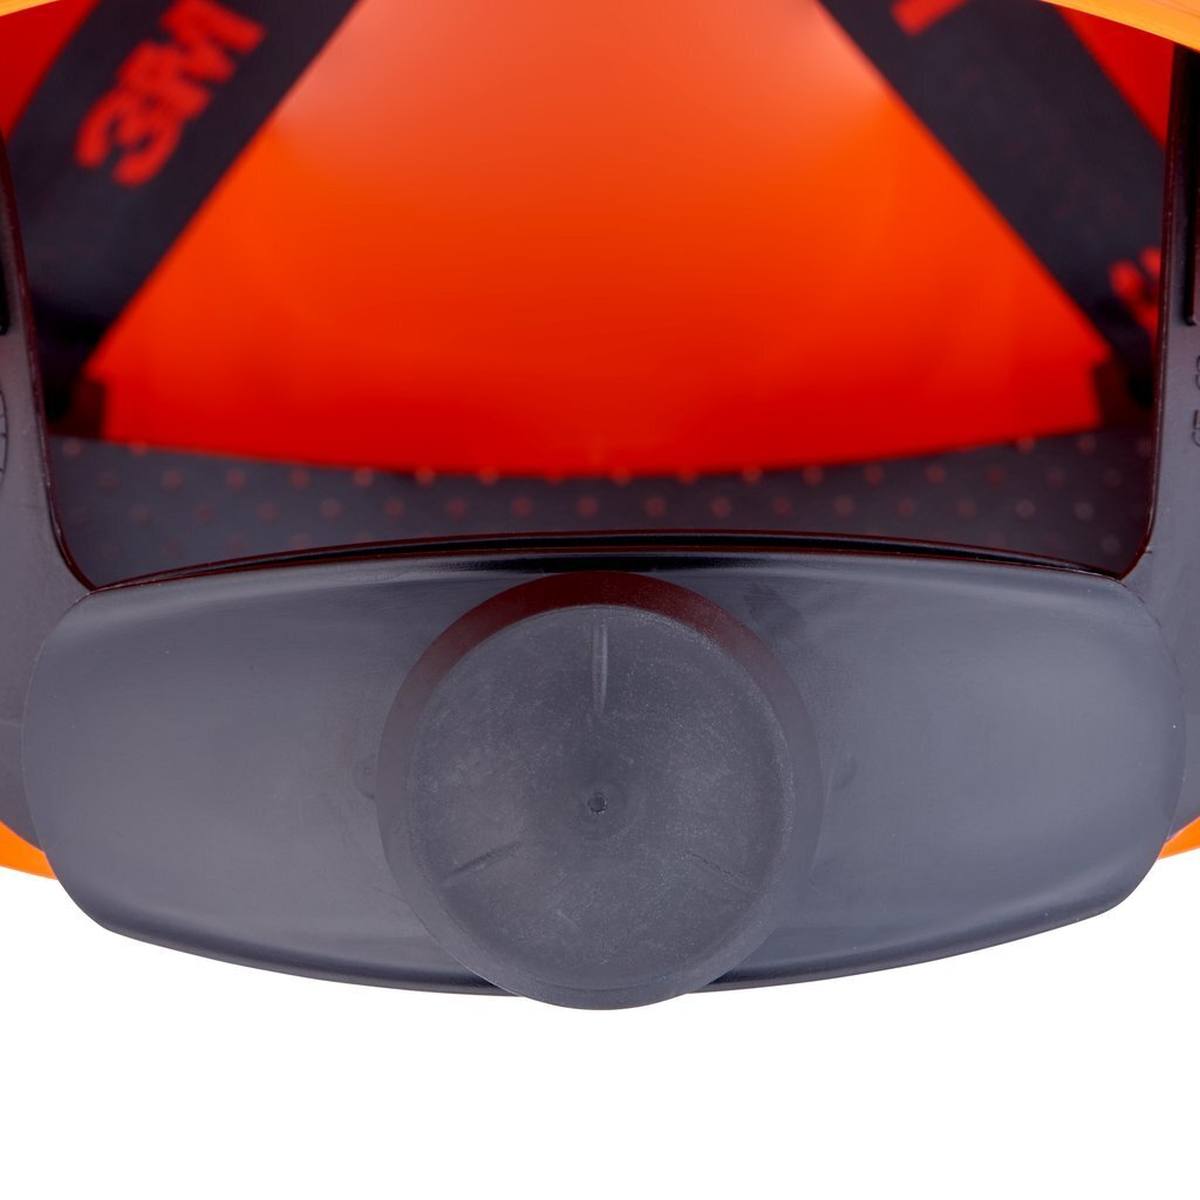 3M G3000 Schutzhelm mit UV-Indikator, orange, ABS, belüftet Ratschenverschluss, Kunststoffschweißband, Reflex-Aufkleber